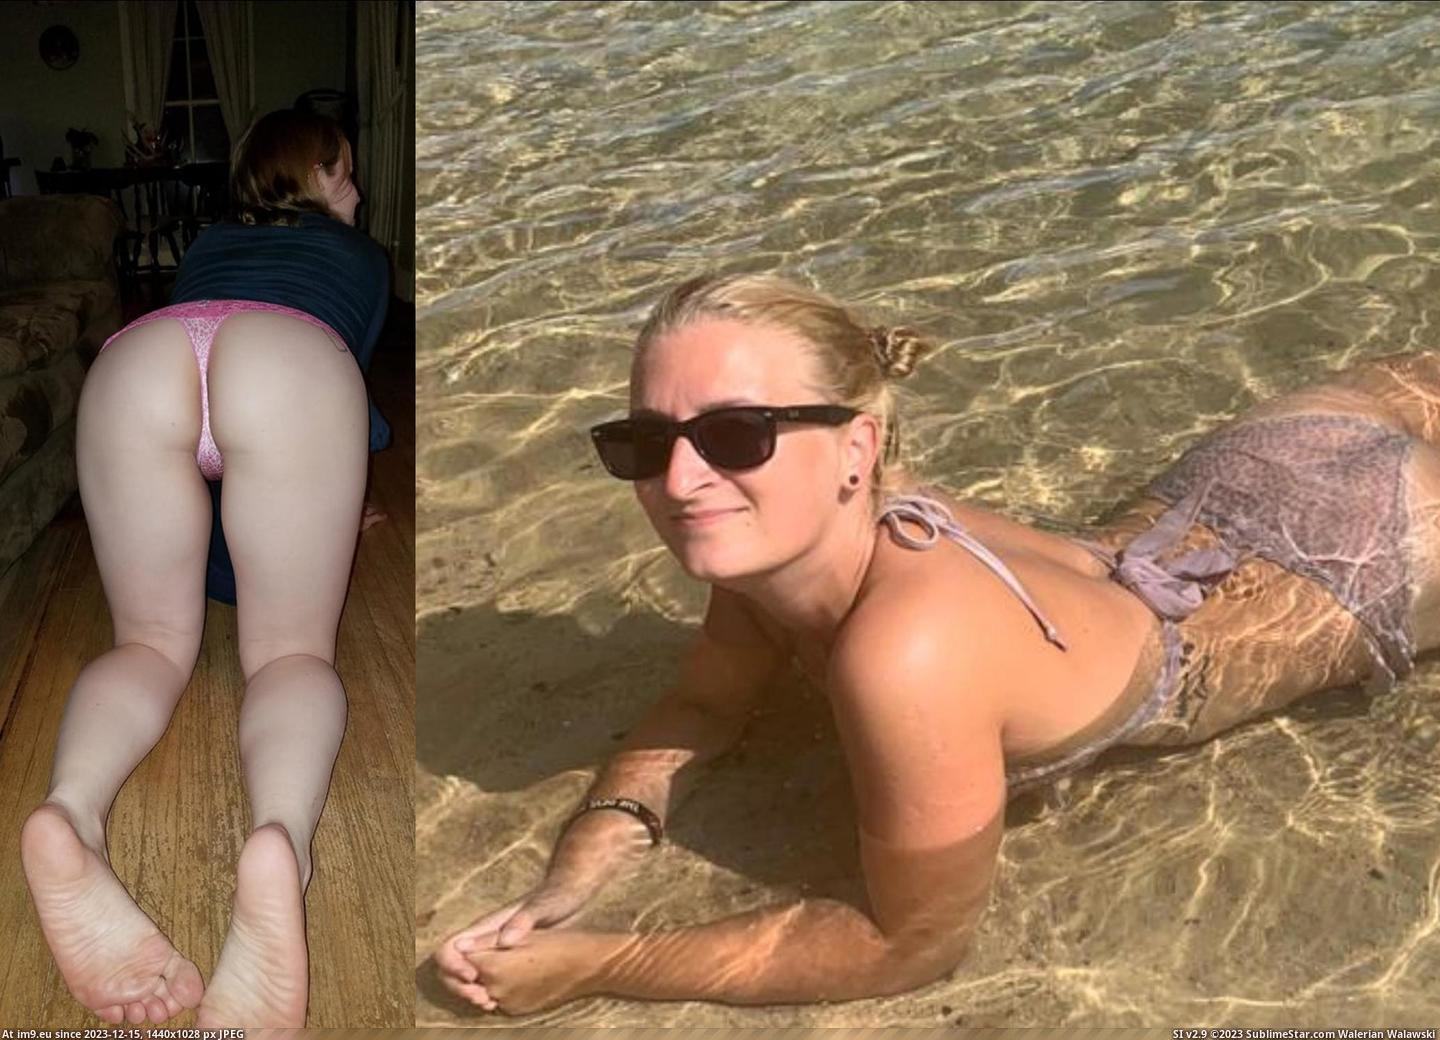 #Sexy #Pussy #Ass #Wichsvorlage #Titten #Nude #Blonde #Sandra wichsvorlage_sandra (15) Pic. (Bild von album wankmeat))